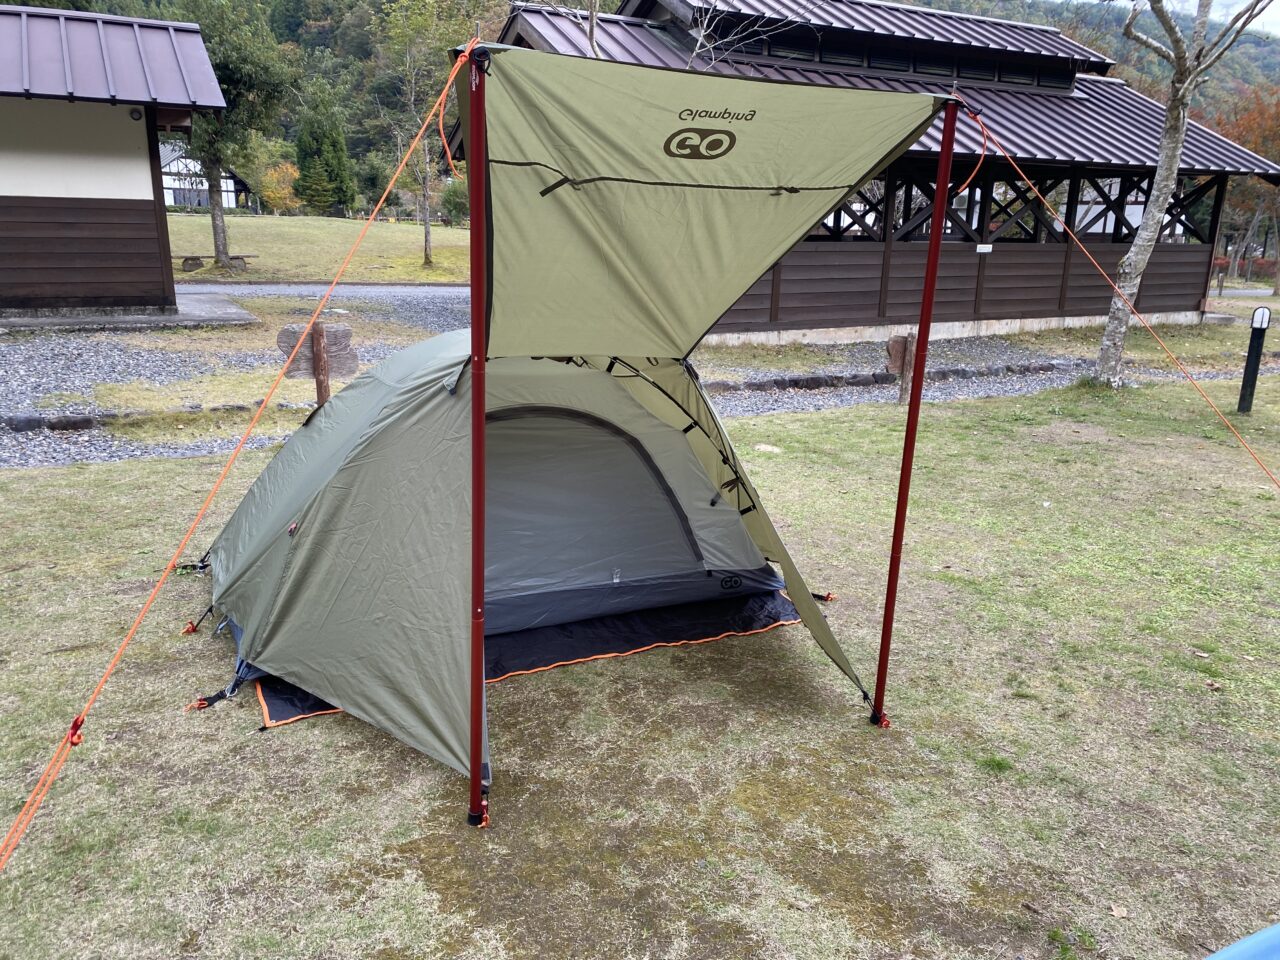 ソロキャンプデビューにおすすめ Goglamping テント ツーリングドームを紹介 おひとり様でキャンプへ行こう